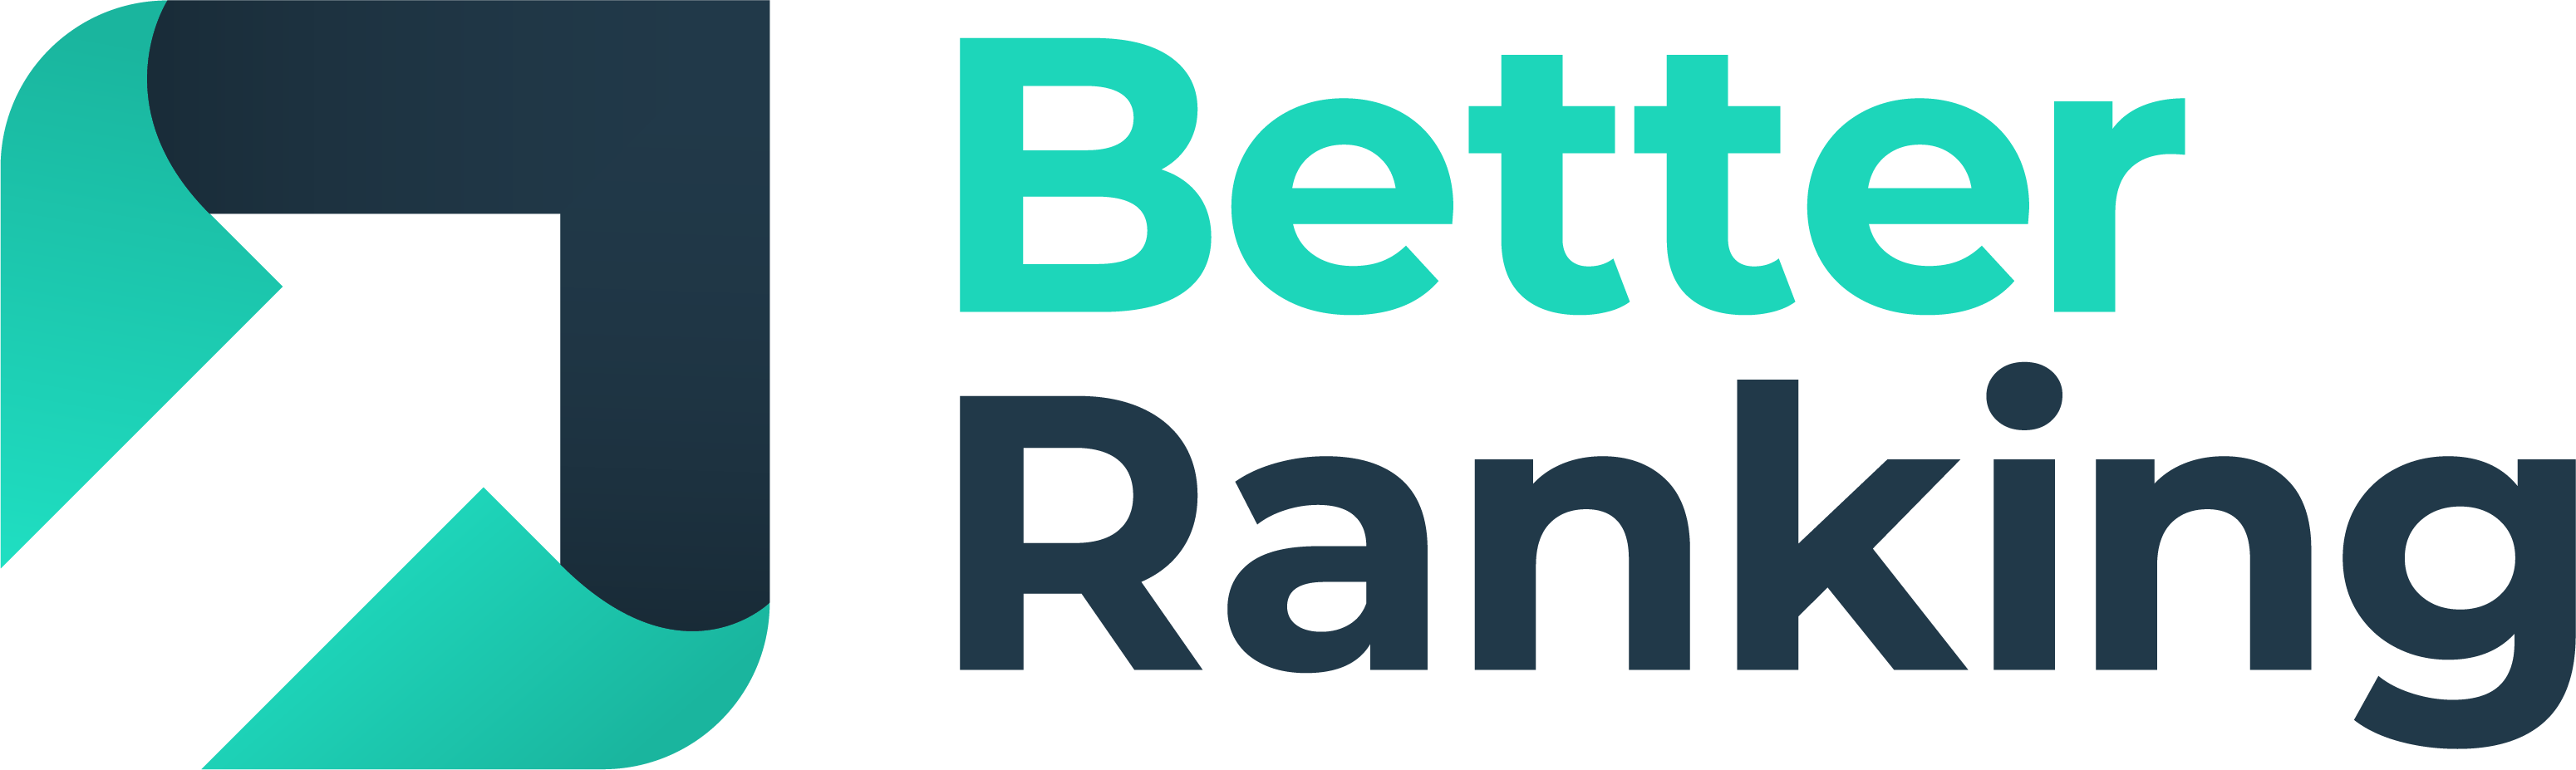 Company logo image - Better Ranking